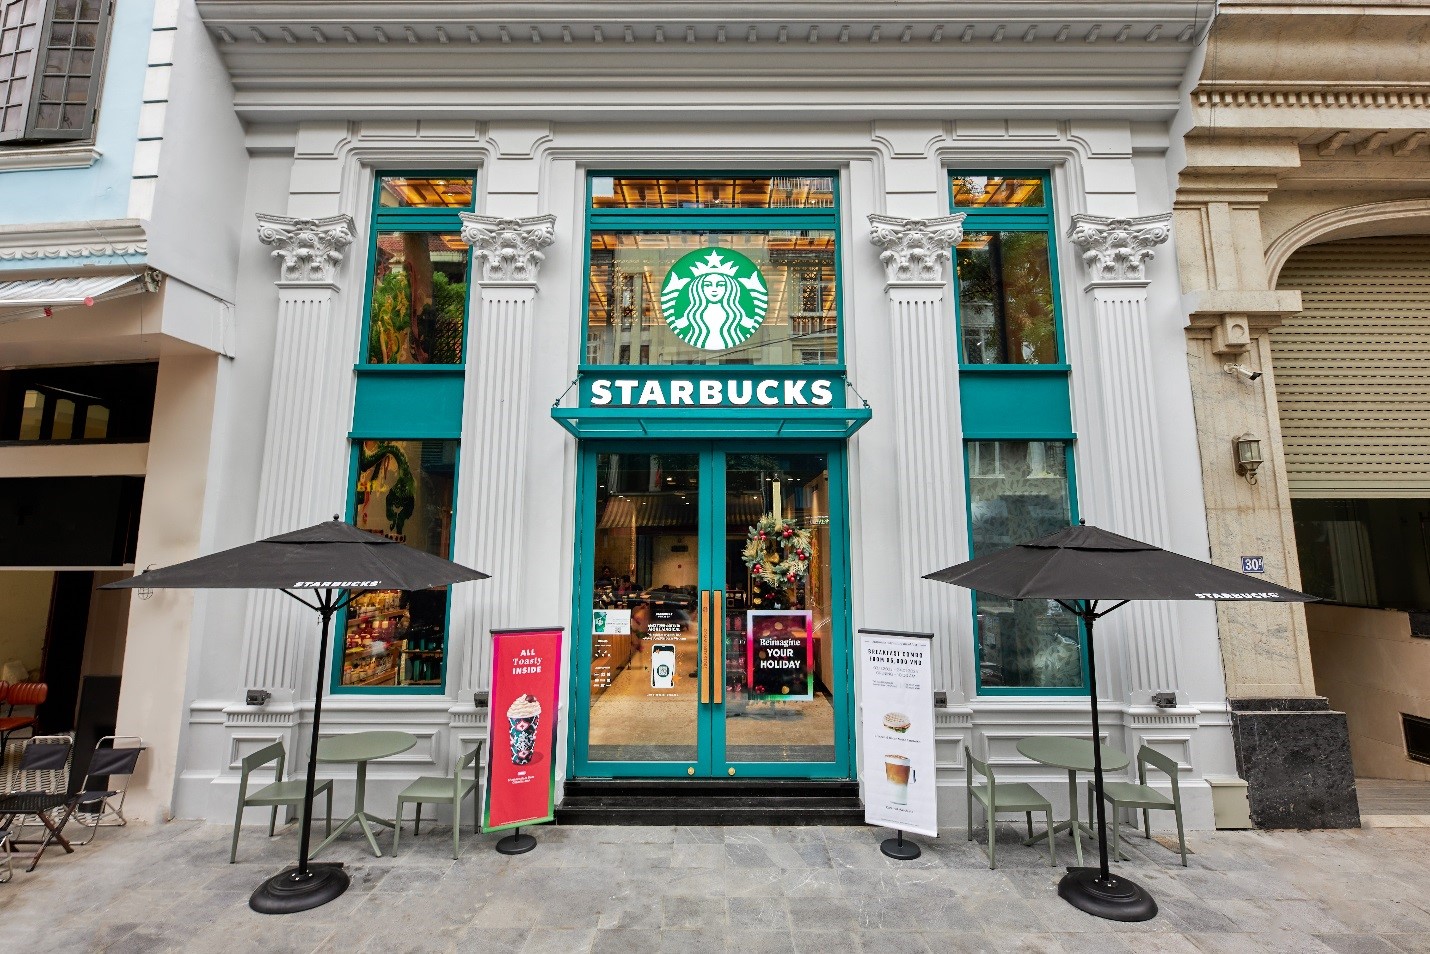 Kinh tế - Starbucks Vietnam chính thức mở cửa hàng cộng đồng đầu tiên hỗ trợ người trẻ hướng nghiệp